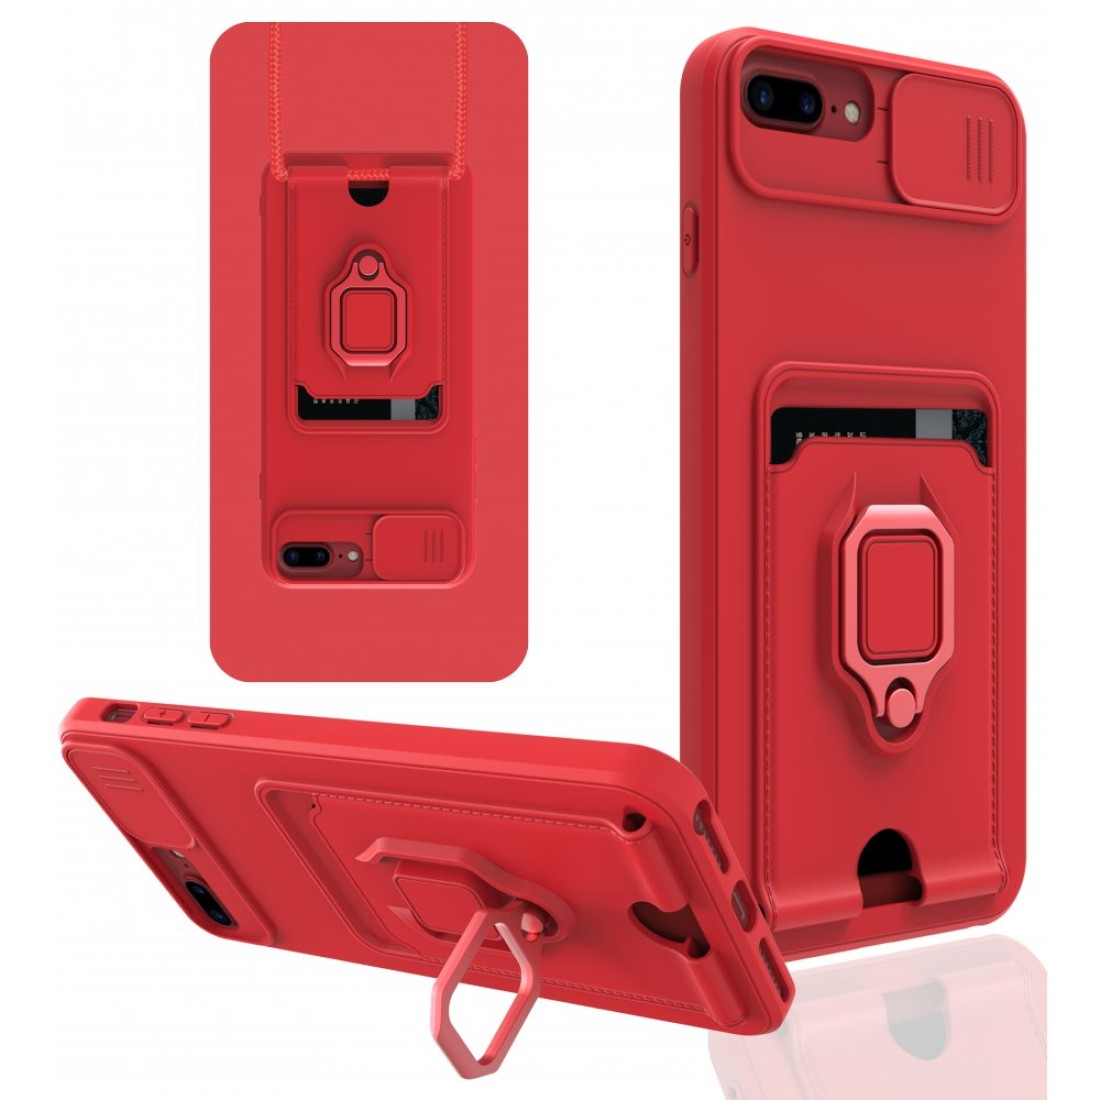 Apple iPhone 6 Plus Kılıf Zuma Kartvizitli Yüzüklü Silikon - Kırmızı